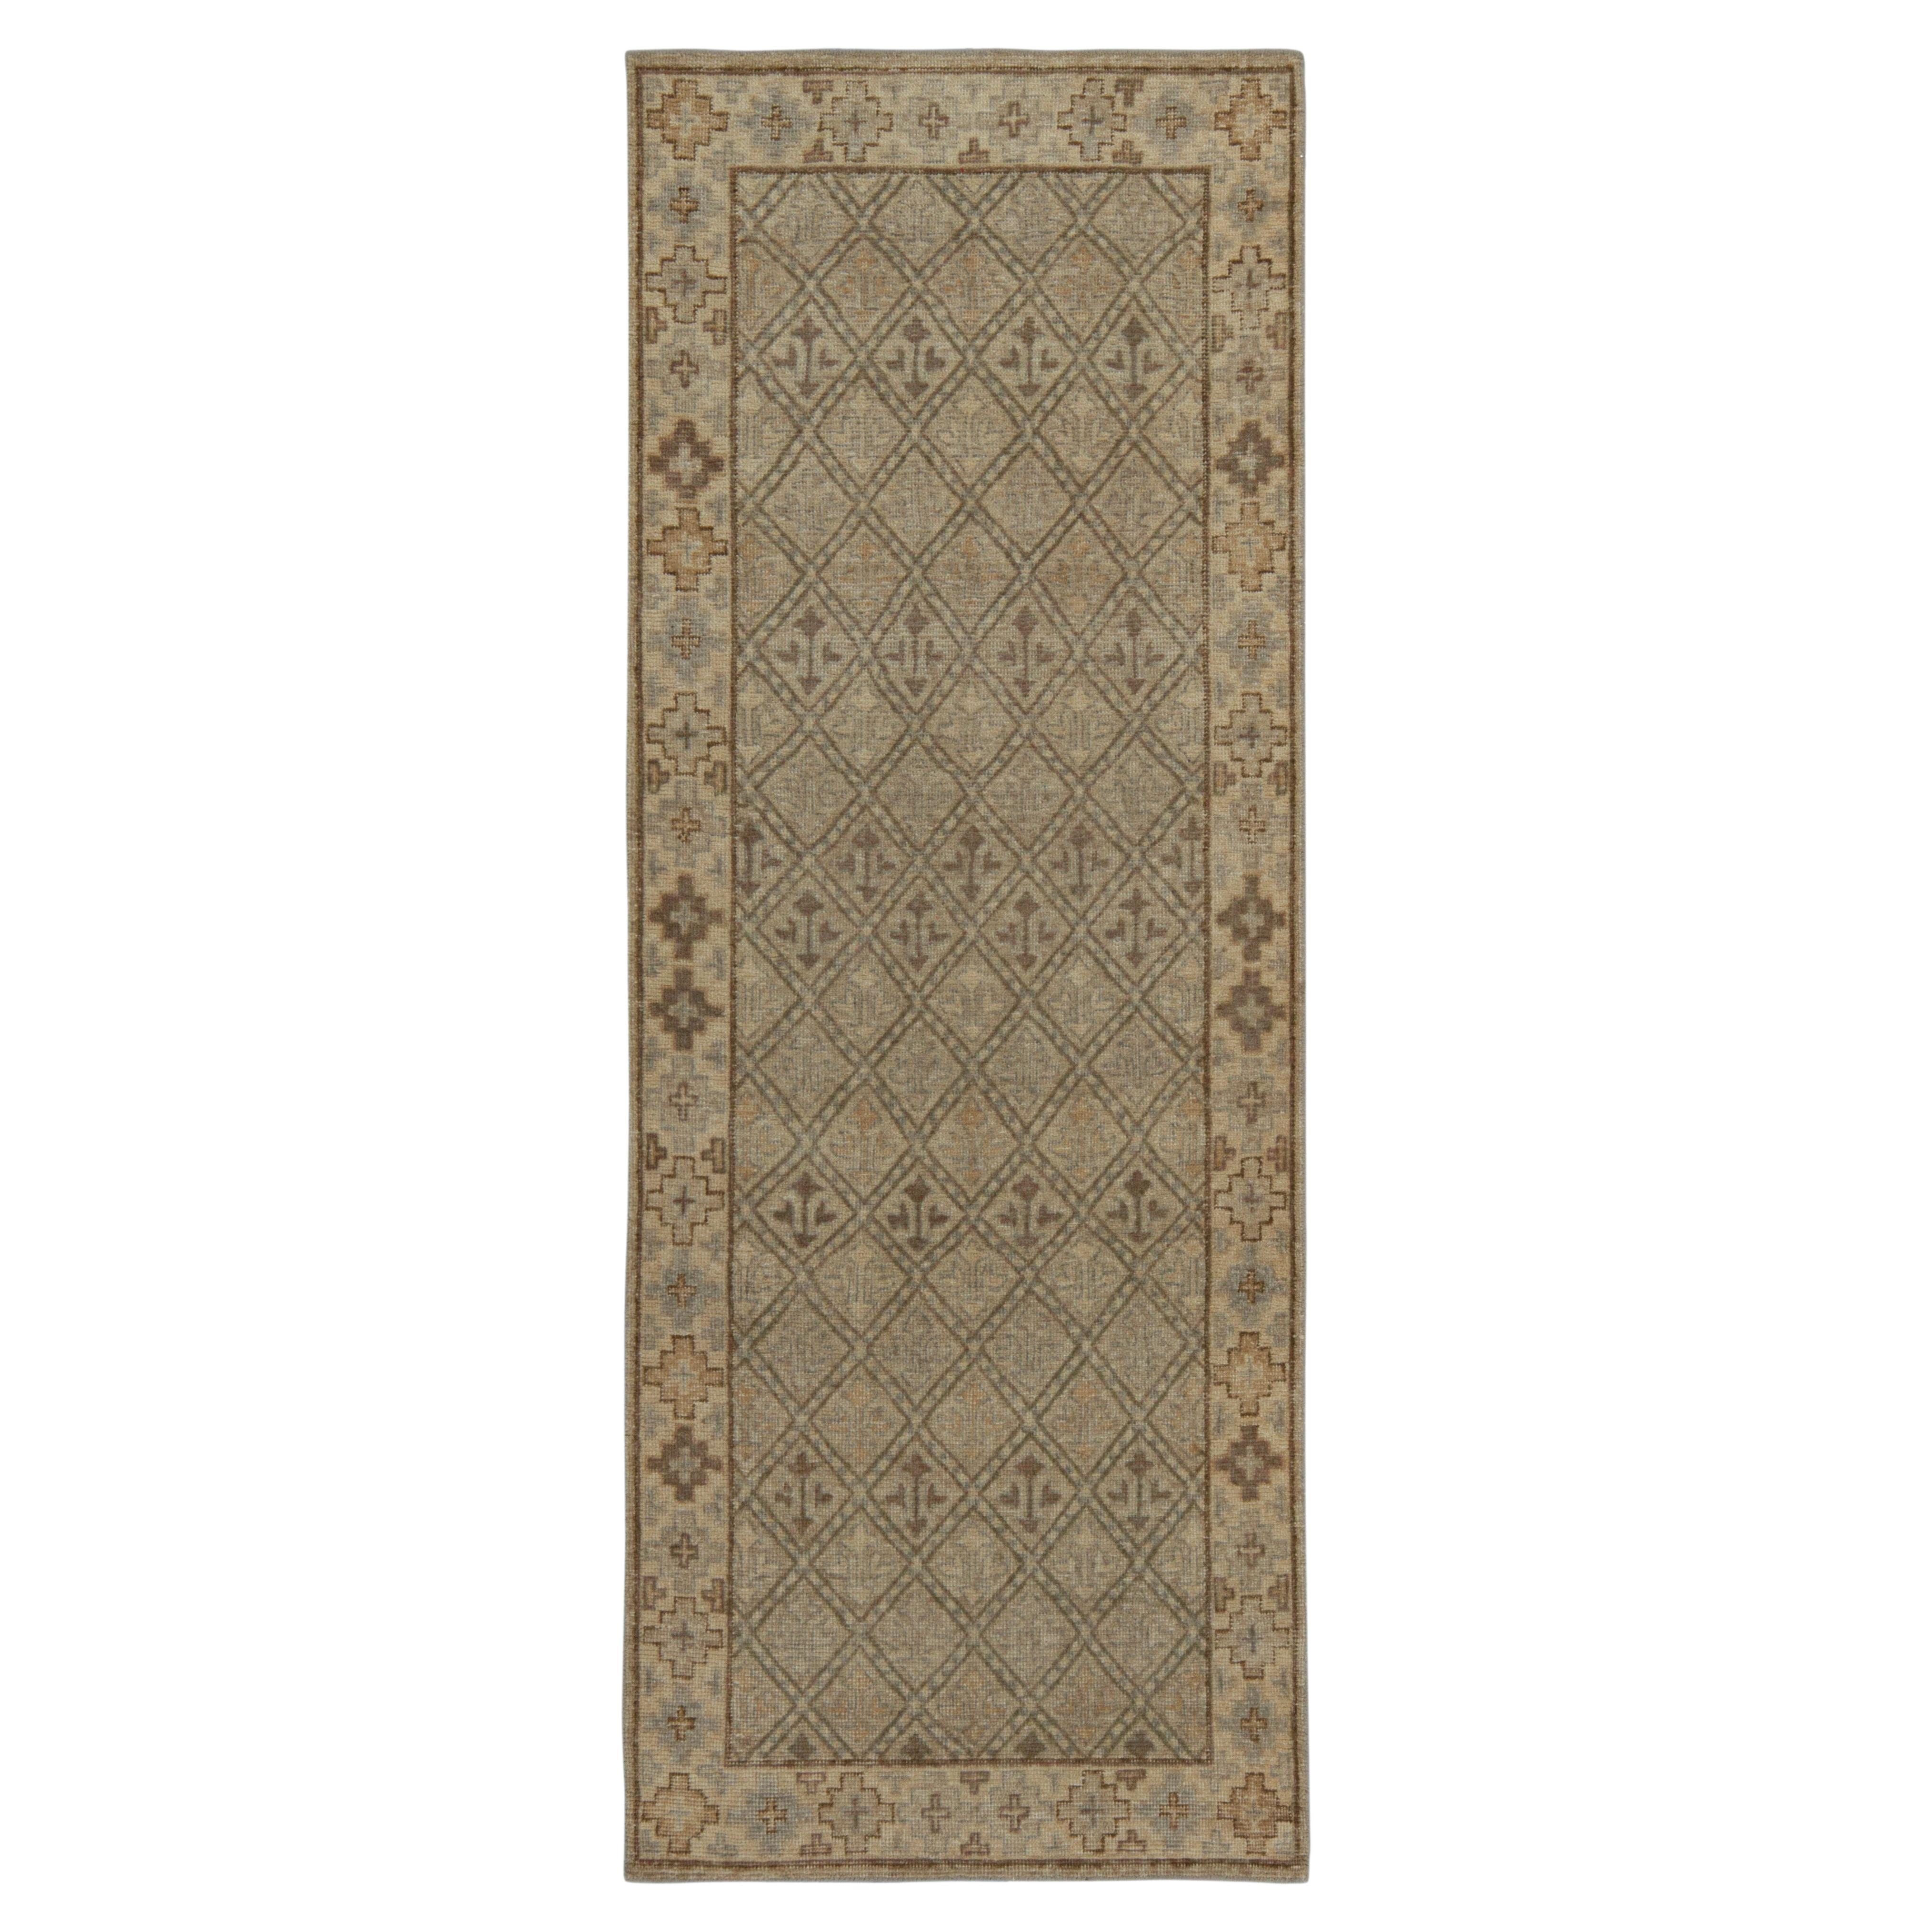 Tapis et tapis de couloir Kilims de style vieilli à motifs tribaux beige-marron et gris